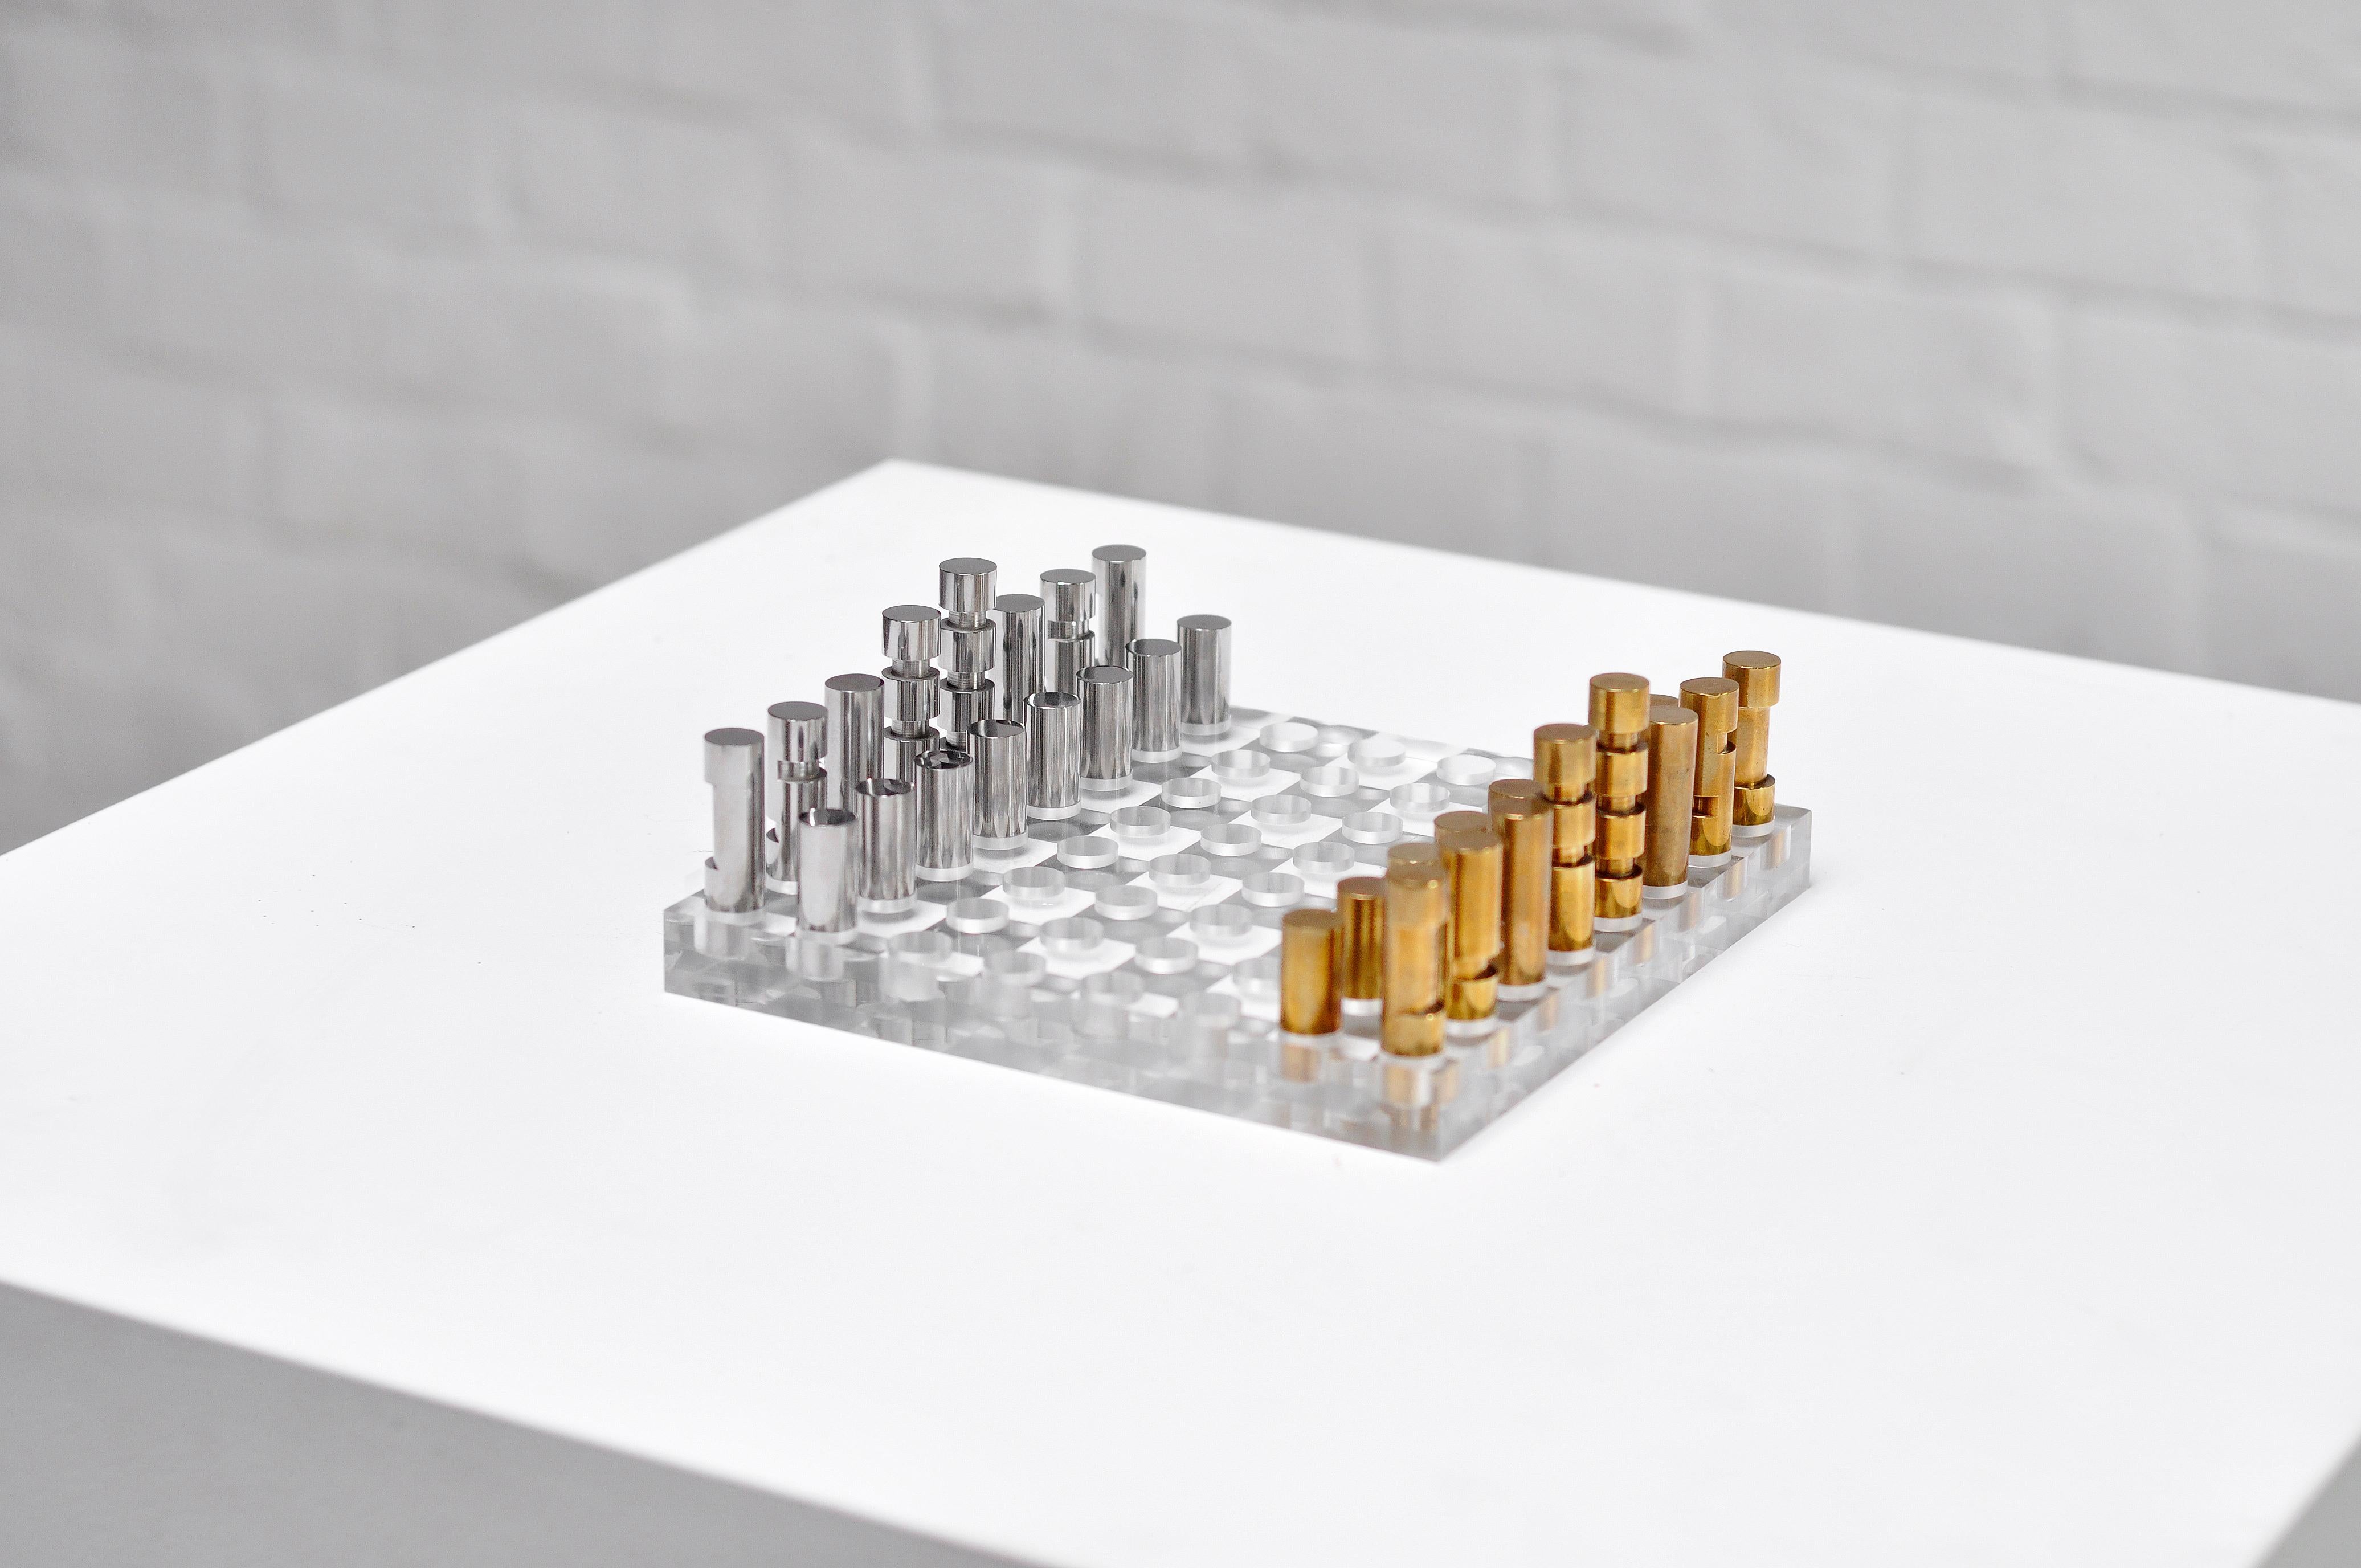 Un jeu d'échecs français minimaliste particulier datant des années 1970. Elle présente un design moderniste avec une base en plexiglas épais perforé surmontée de pions sculpturaux en métal et en bronze. Cette pièce n'est pas encore attribuée, le